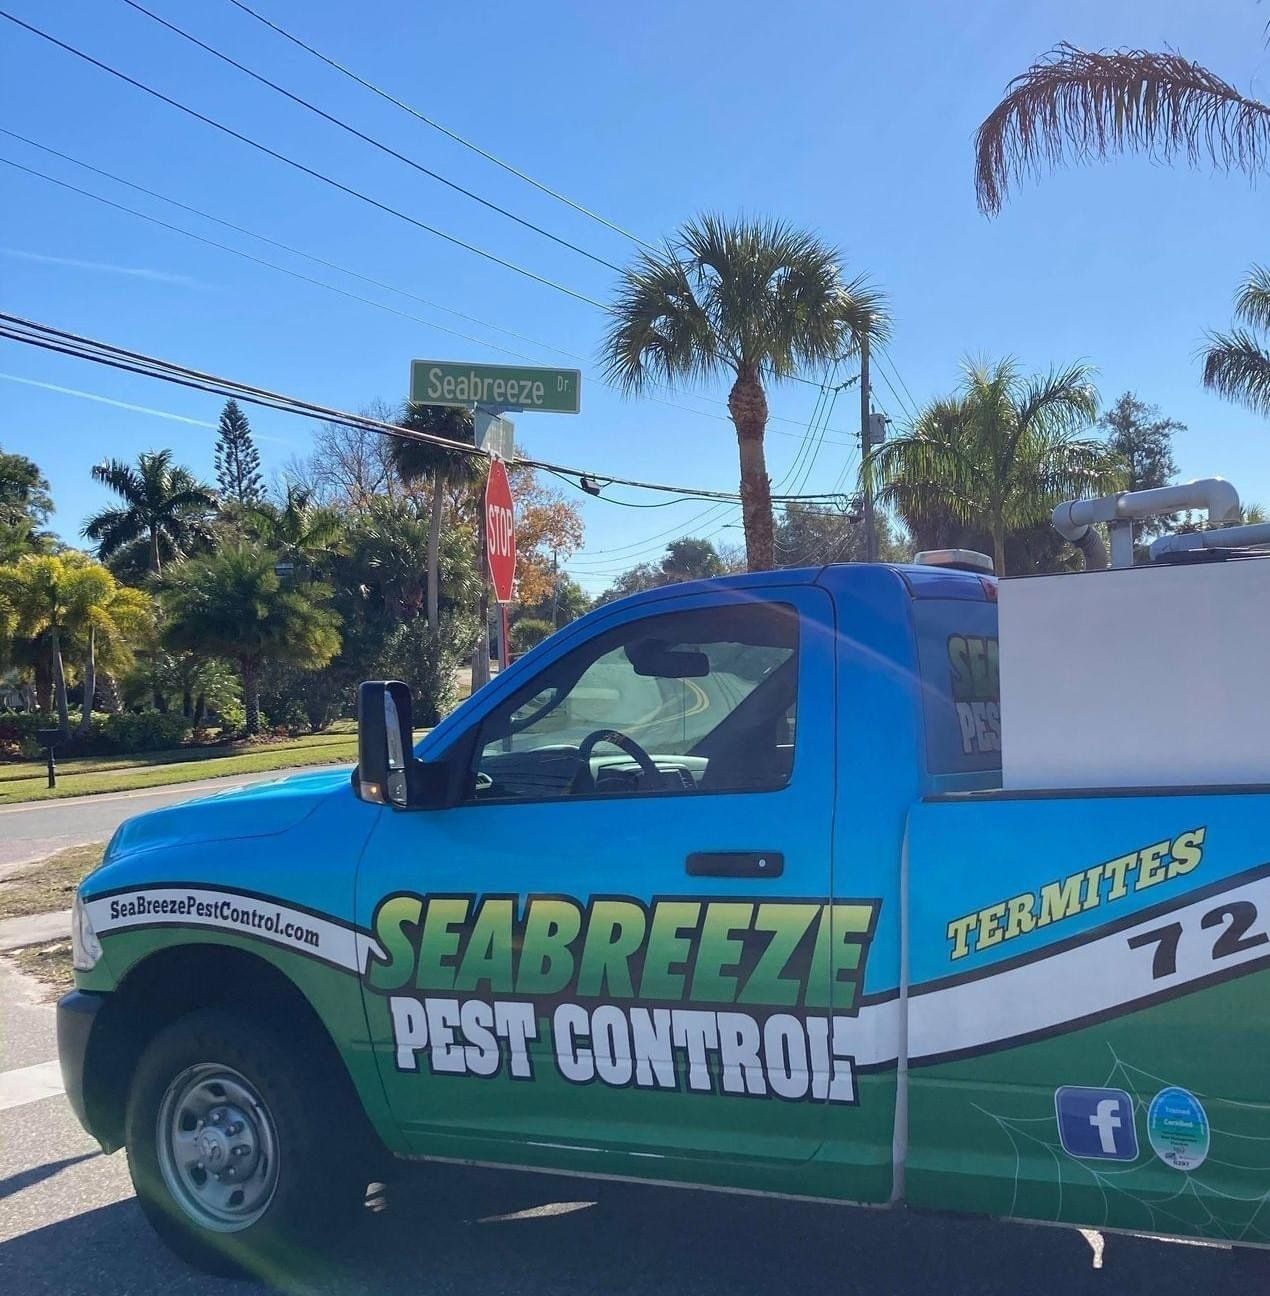 Seabreeze Pest Control Truck | Trinity, FL, FL | Seabreeze Pest Control